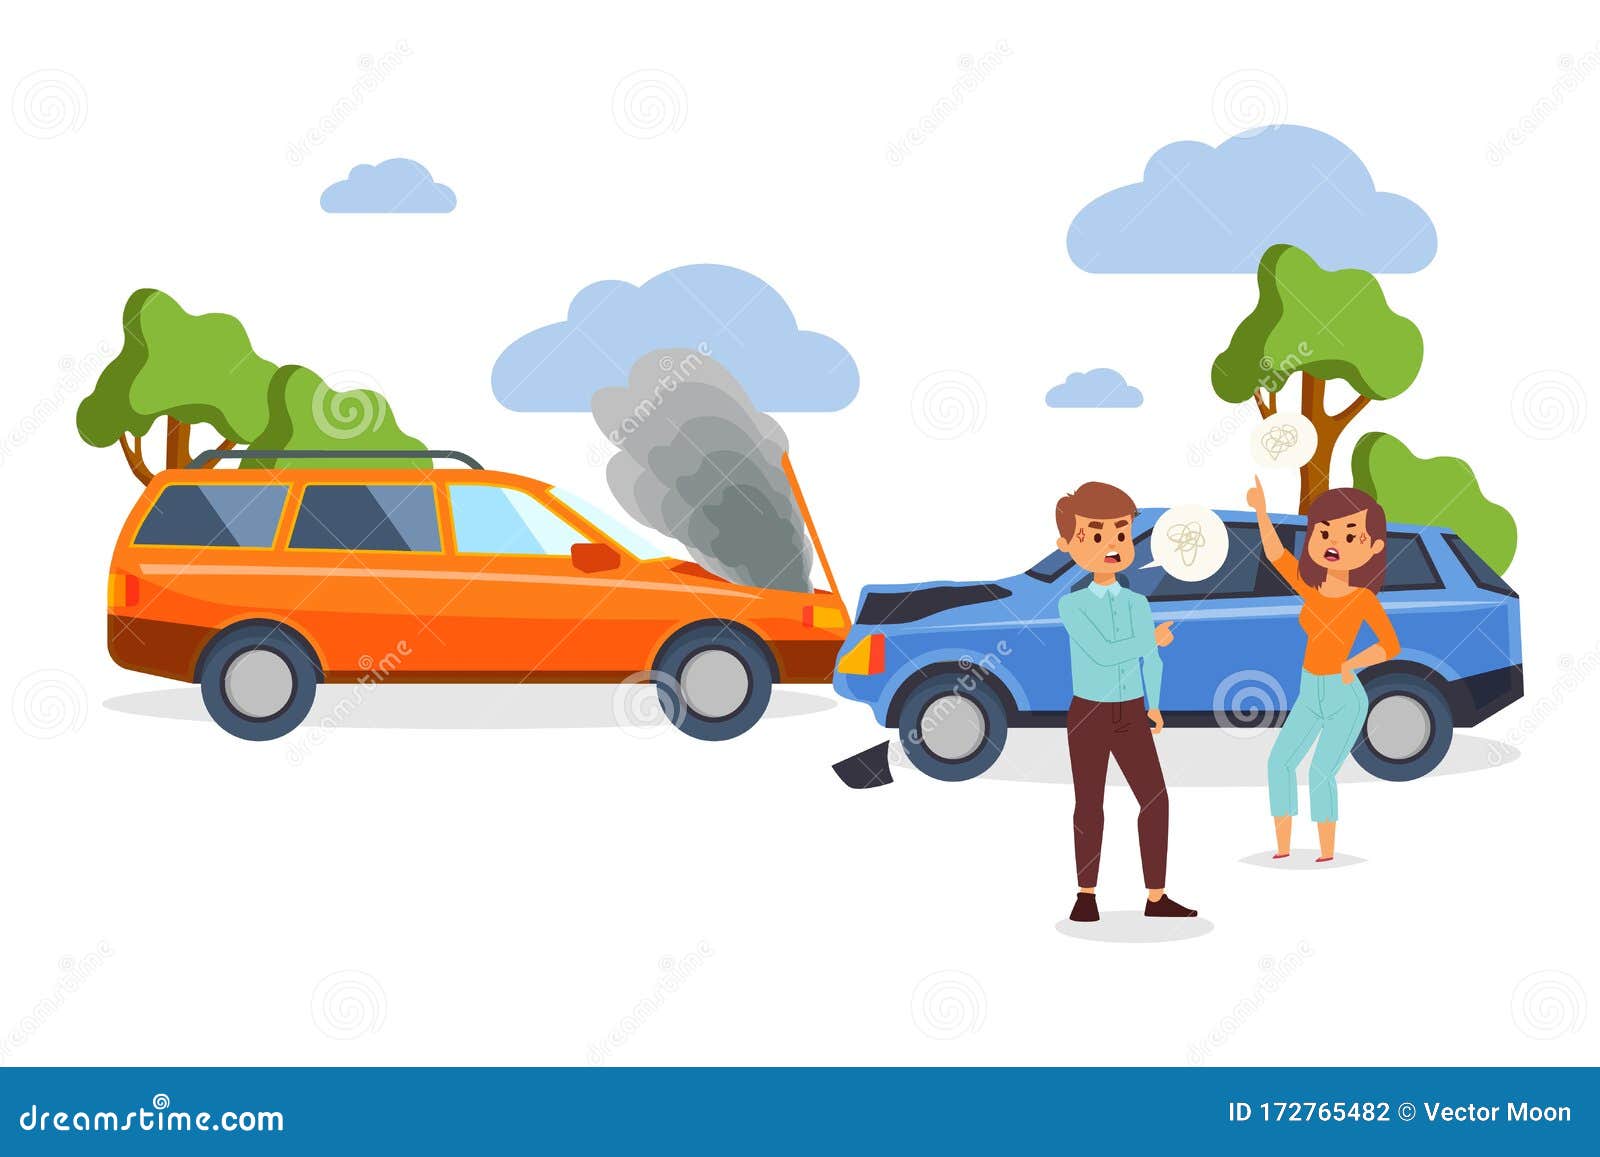 Car Cartoon Crash Woman Stock Illustrations – 300 Car Cartoon Crash Woman  Stock Illustrations, Vectors & Clipart - Dreamstime